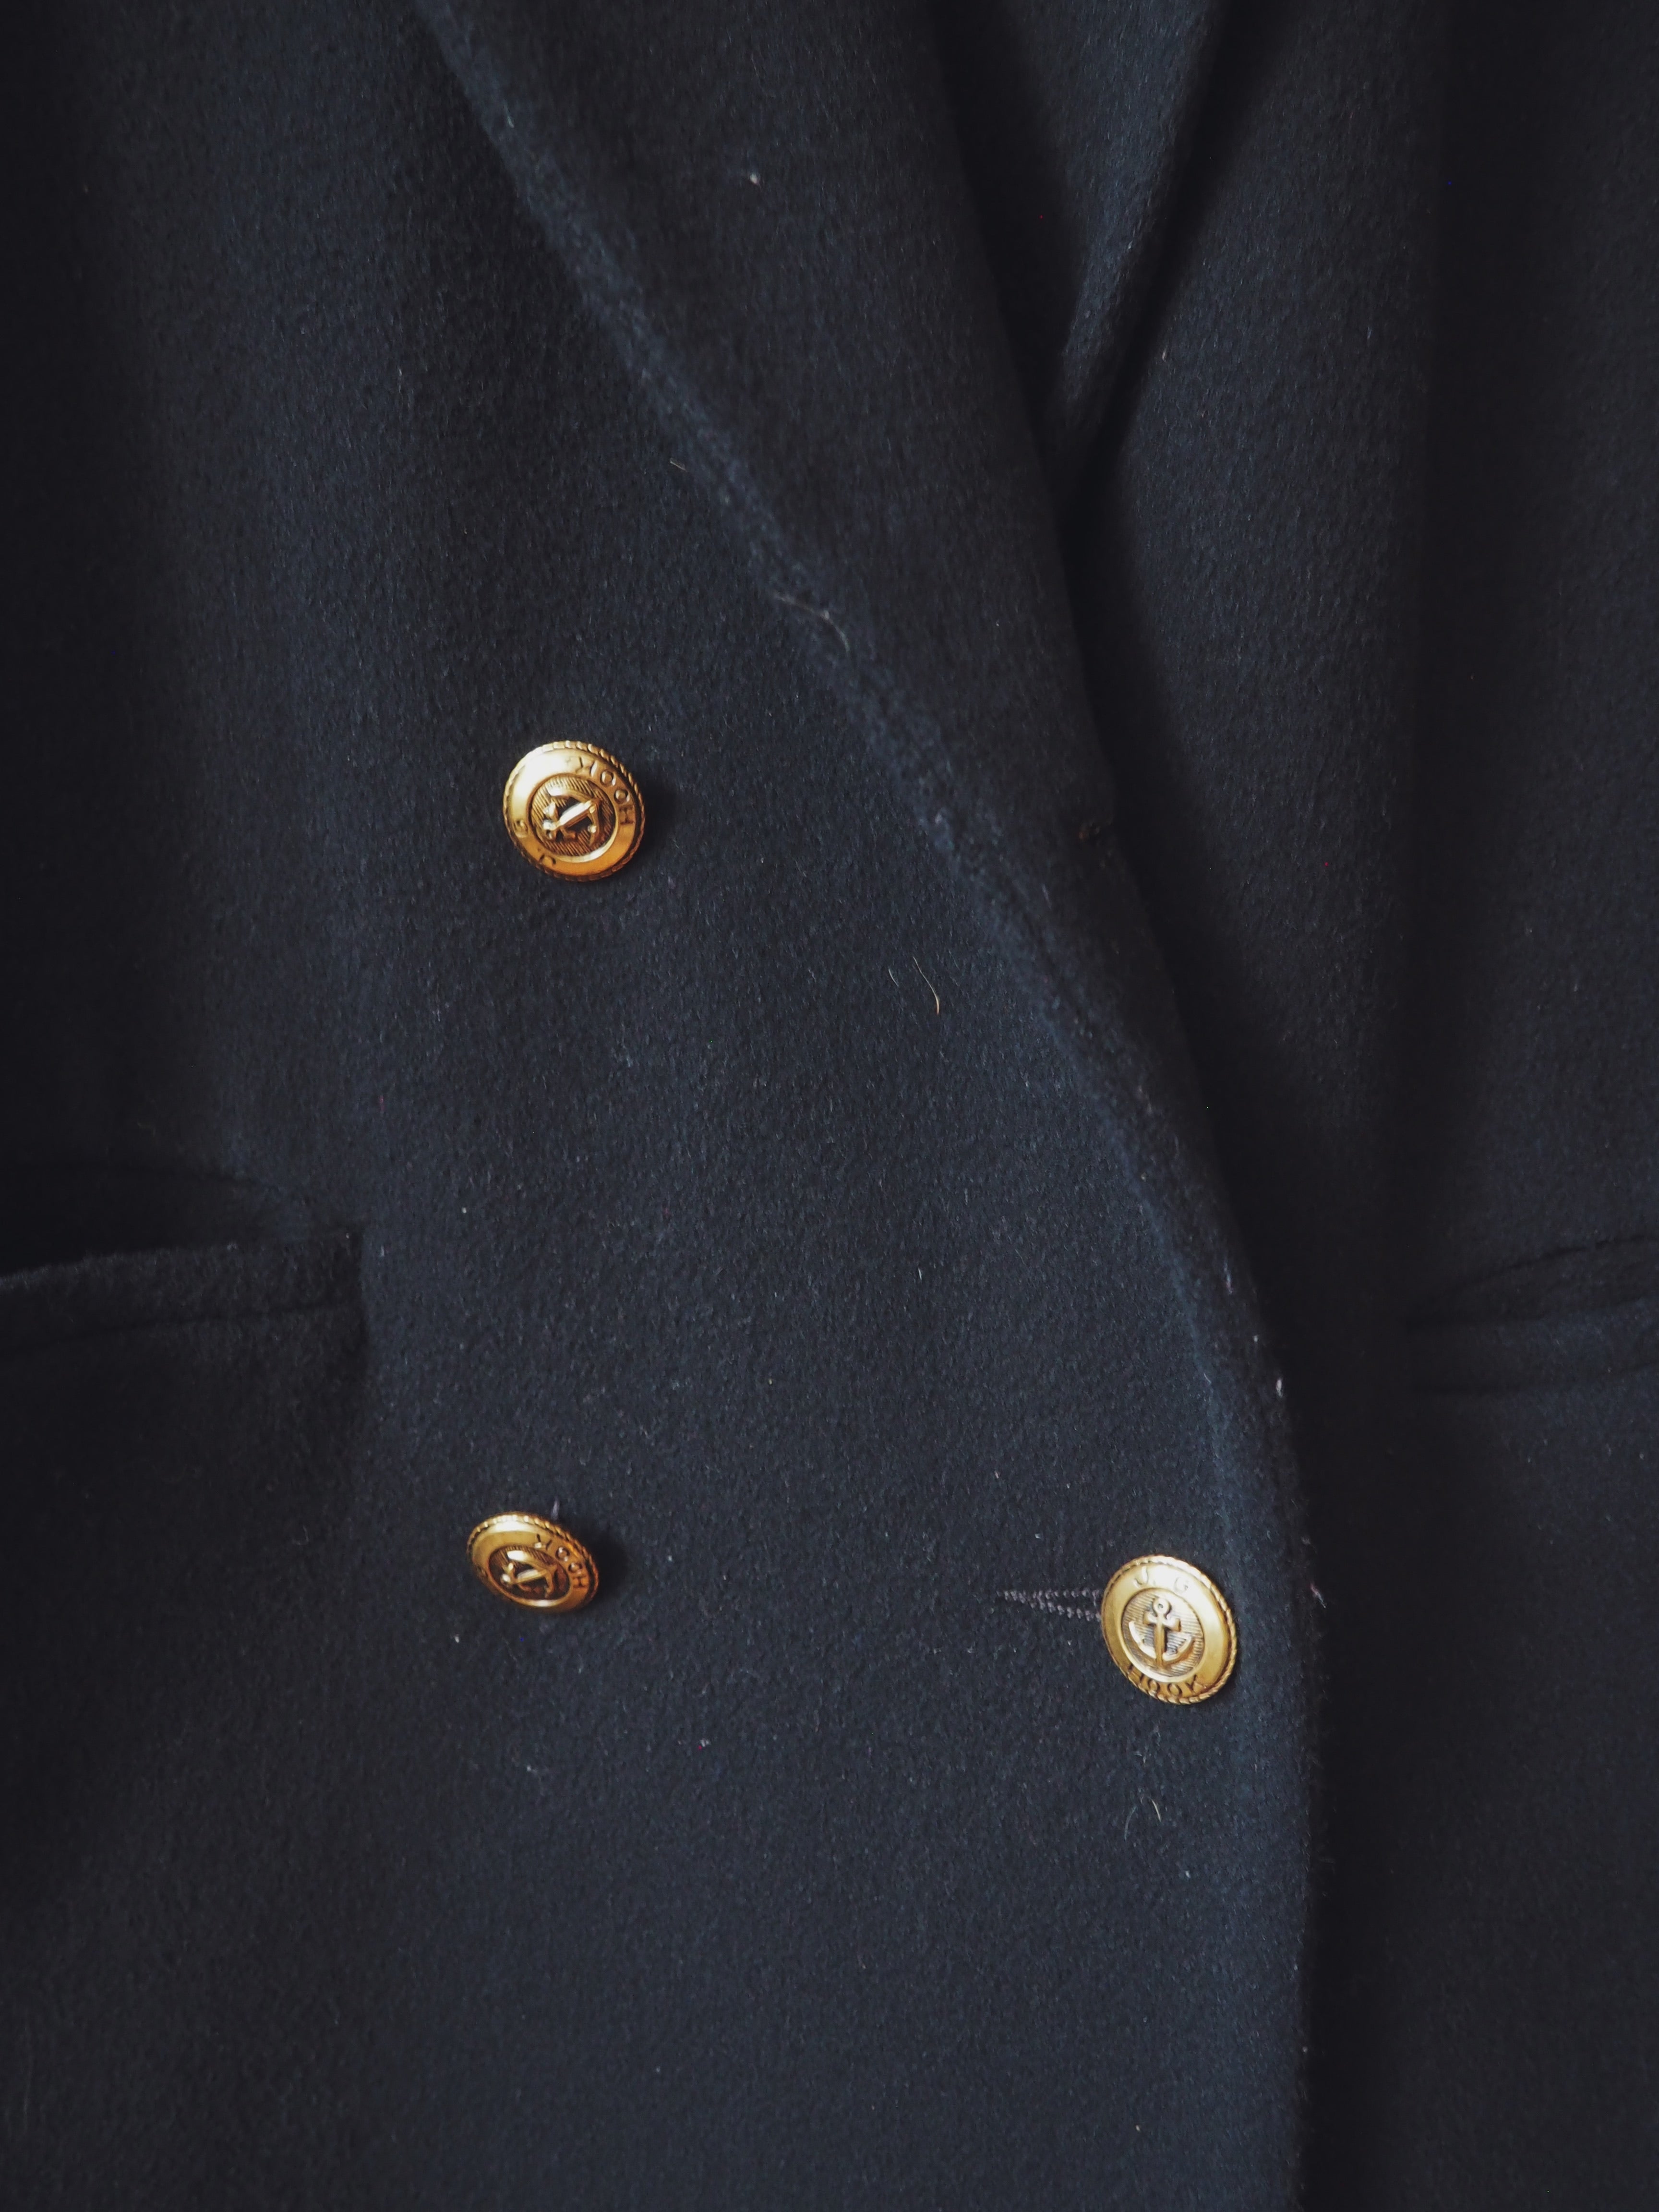 Vintage Nautical Button Black Blazer